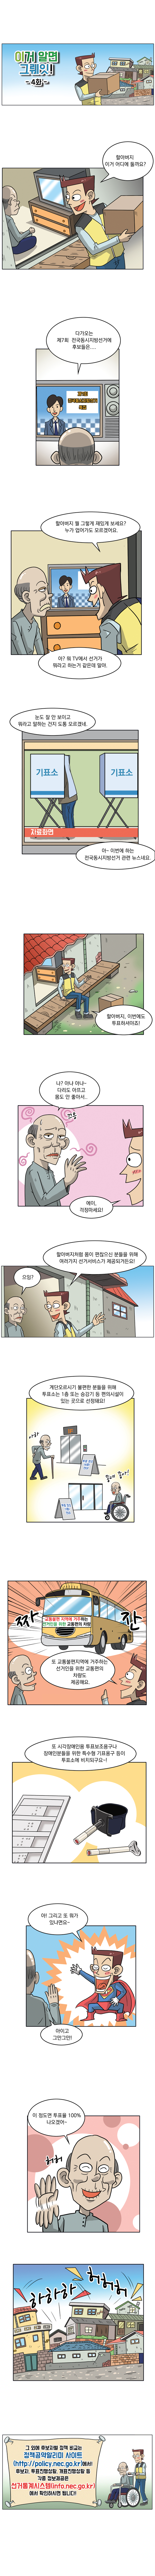  제7회 동시지방선거 웹툰 「이거 알면 그뤠잇!」 4화  